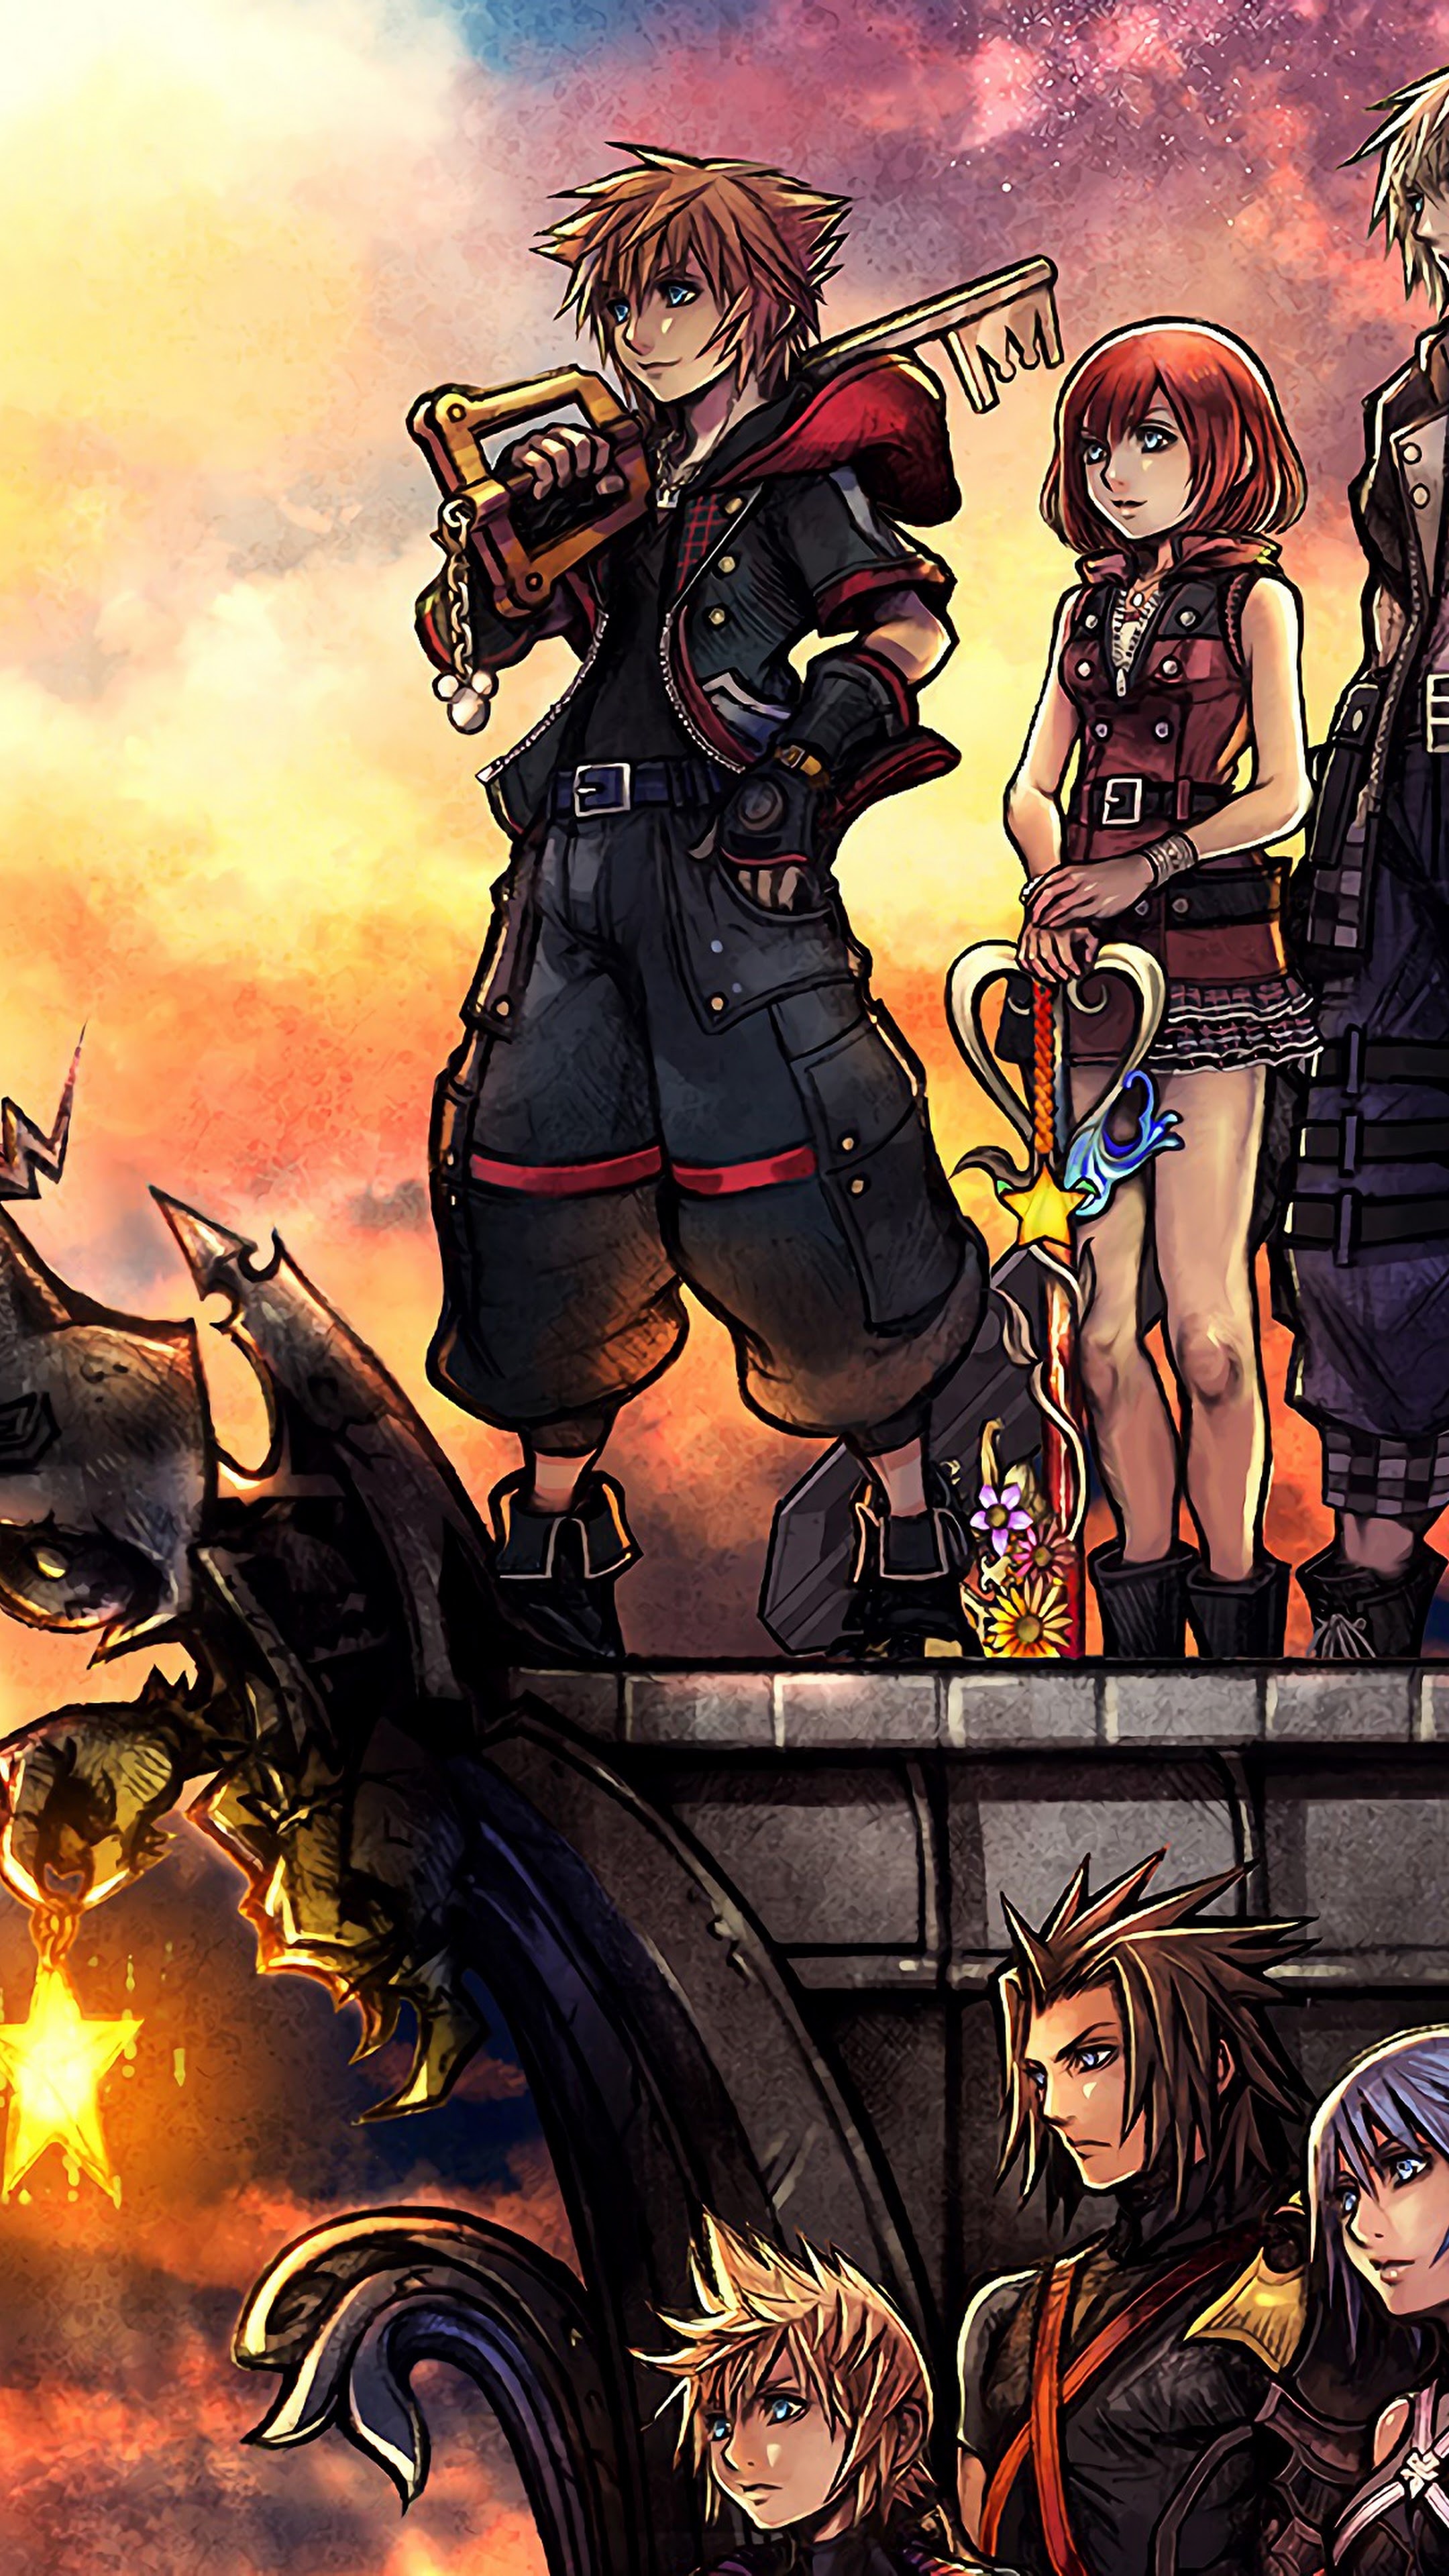 Kingdom Hearts 3 characters, 4K wallpaper, Keyblade wielders, Exciting adventure, 2160x3840 4K Phone